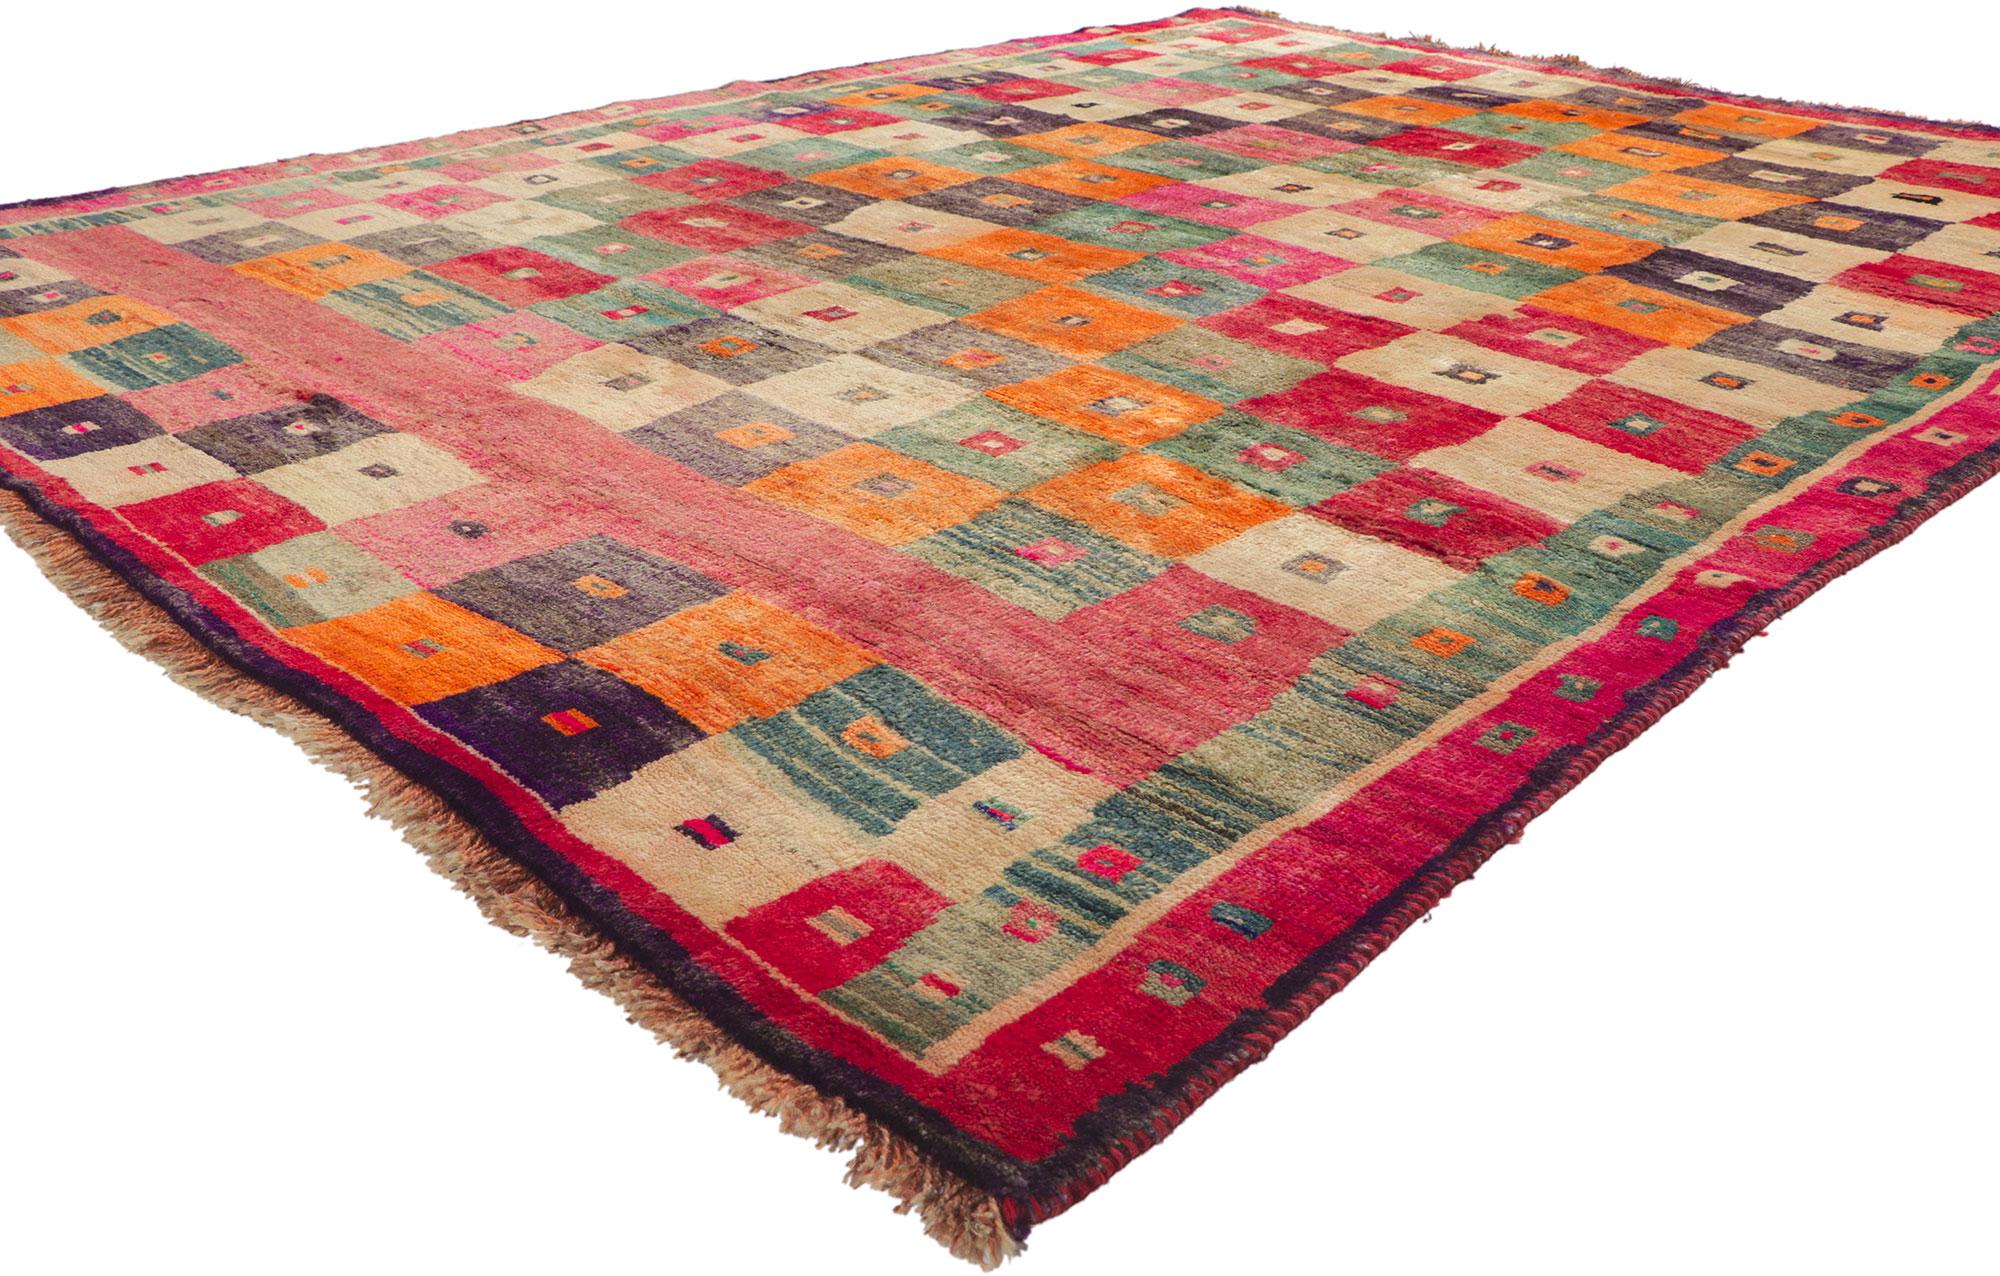 61165 Vintage Persischer Gabbeh Teppich mit Schachbrettmuster Inspiriert von Karl Benjamin 06'05 x 08'05. Mit seinem Schachbrettmuster, seinen unglaublichen Details und seiner Textur ist dieser handgeknüpfte persische Gabbeh-Teppich aus Wolle im